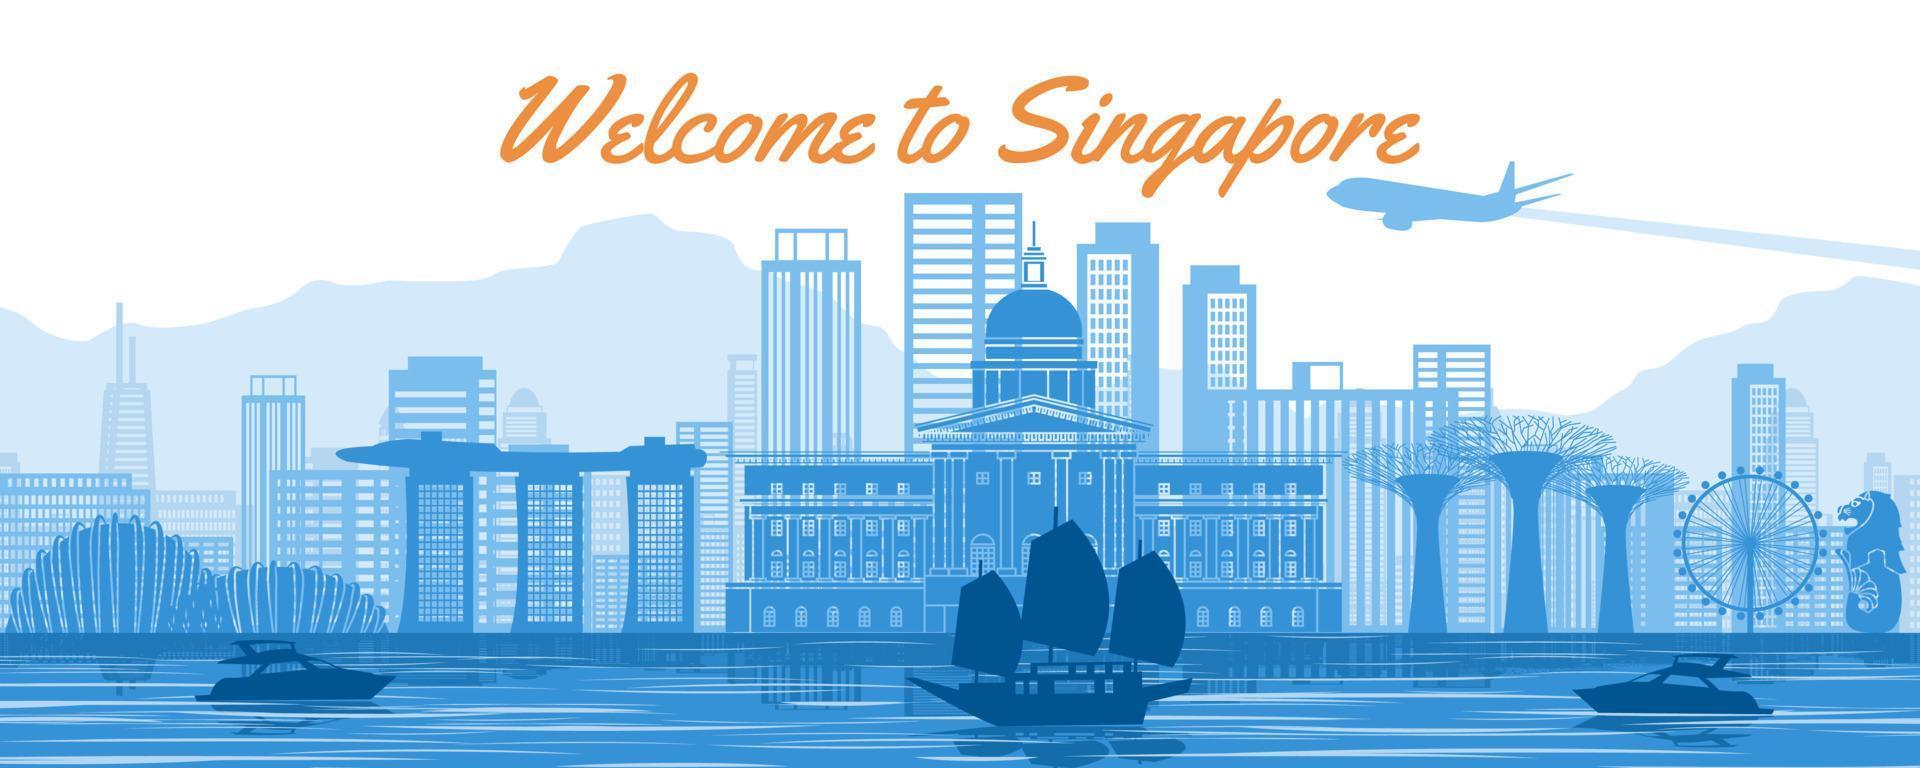 punto de referencia famoso de singapur con diseño de color azul y blanco vector